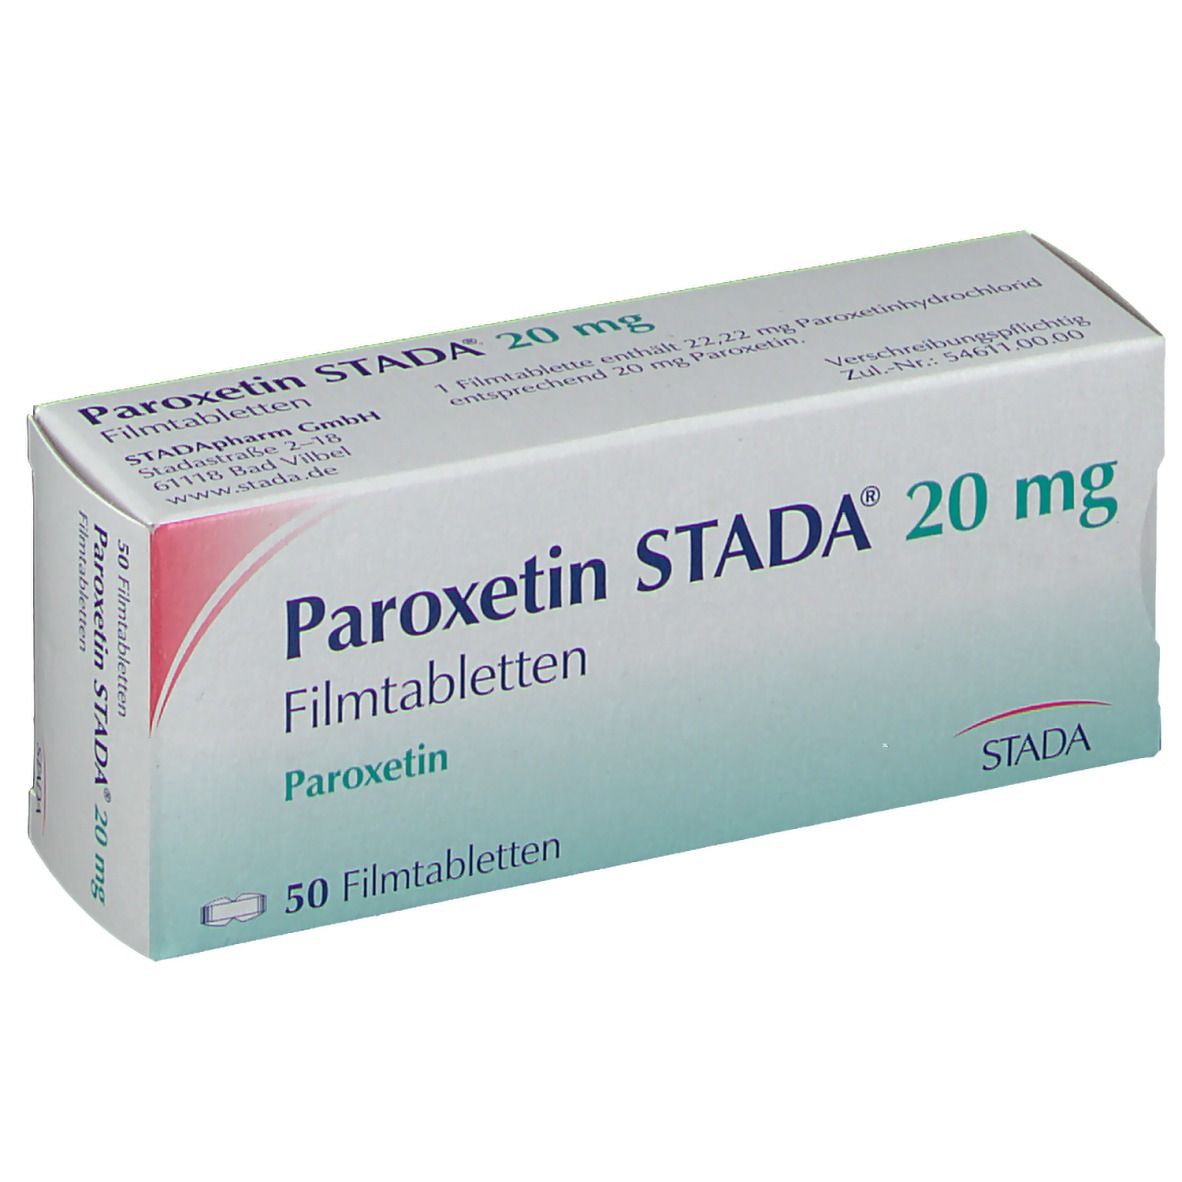 Paroxetin STADA® 20 mg